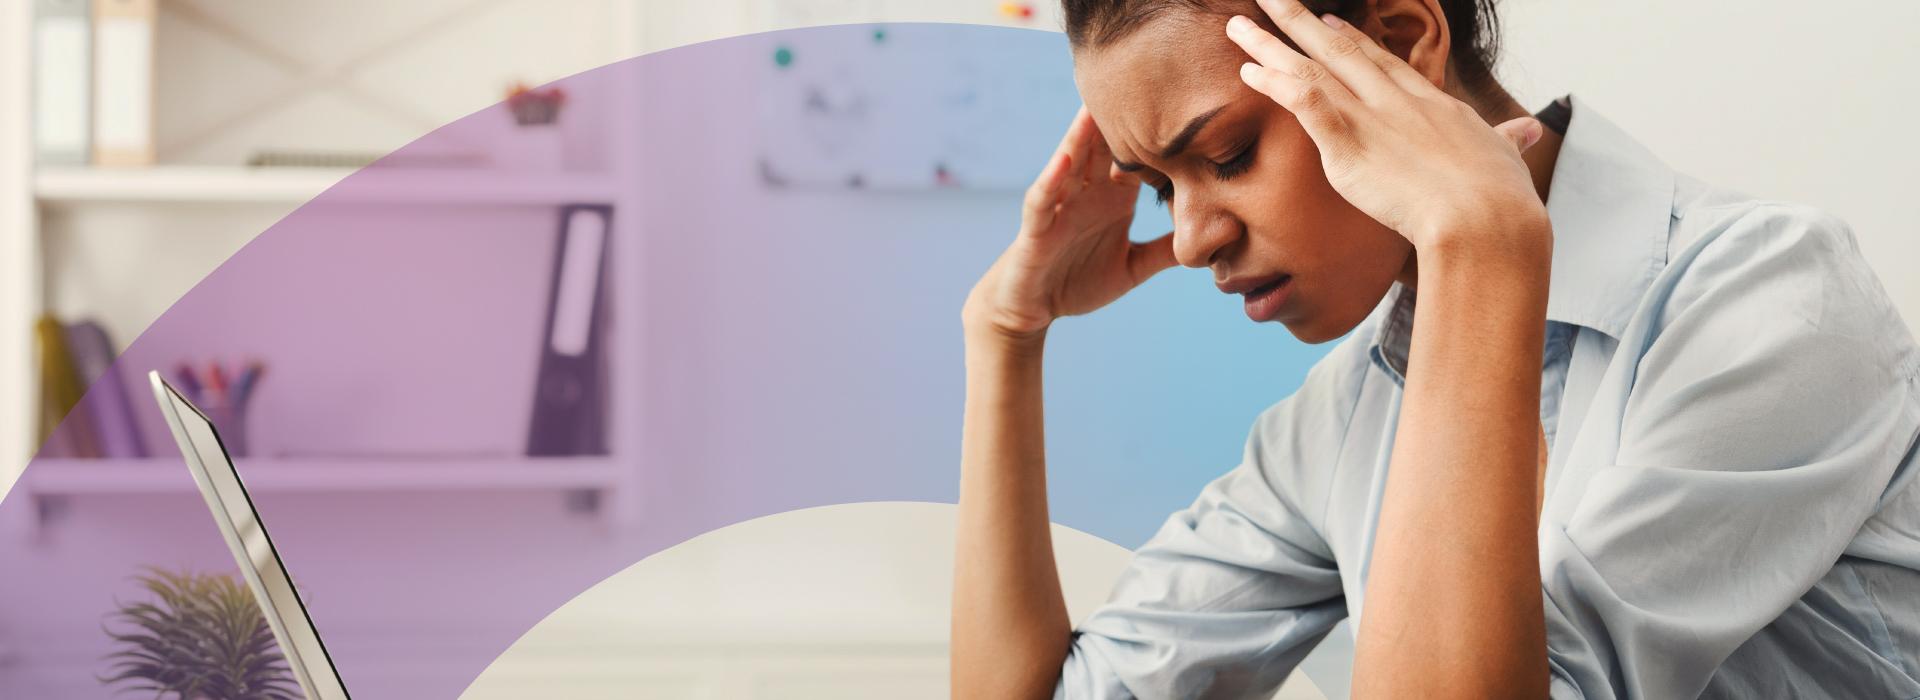 Síndrome de Burnout: como evitar esse problema no ambiente de trabalho?